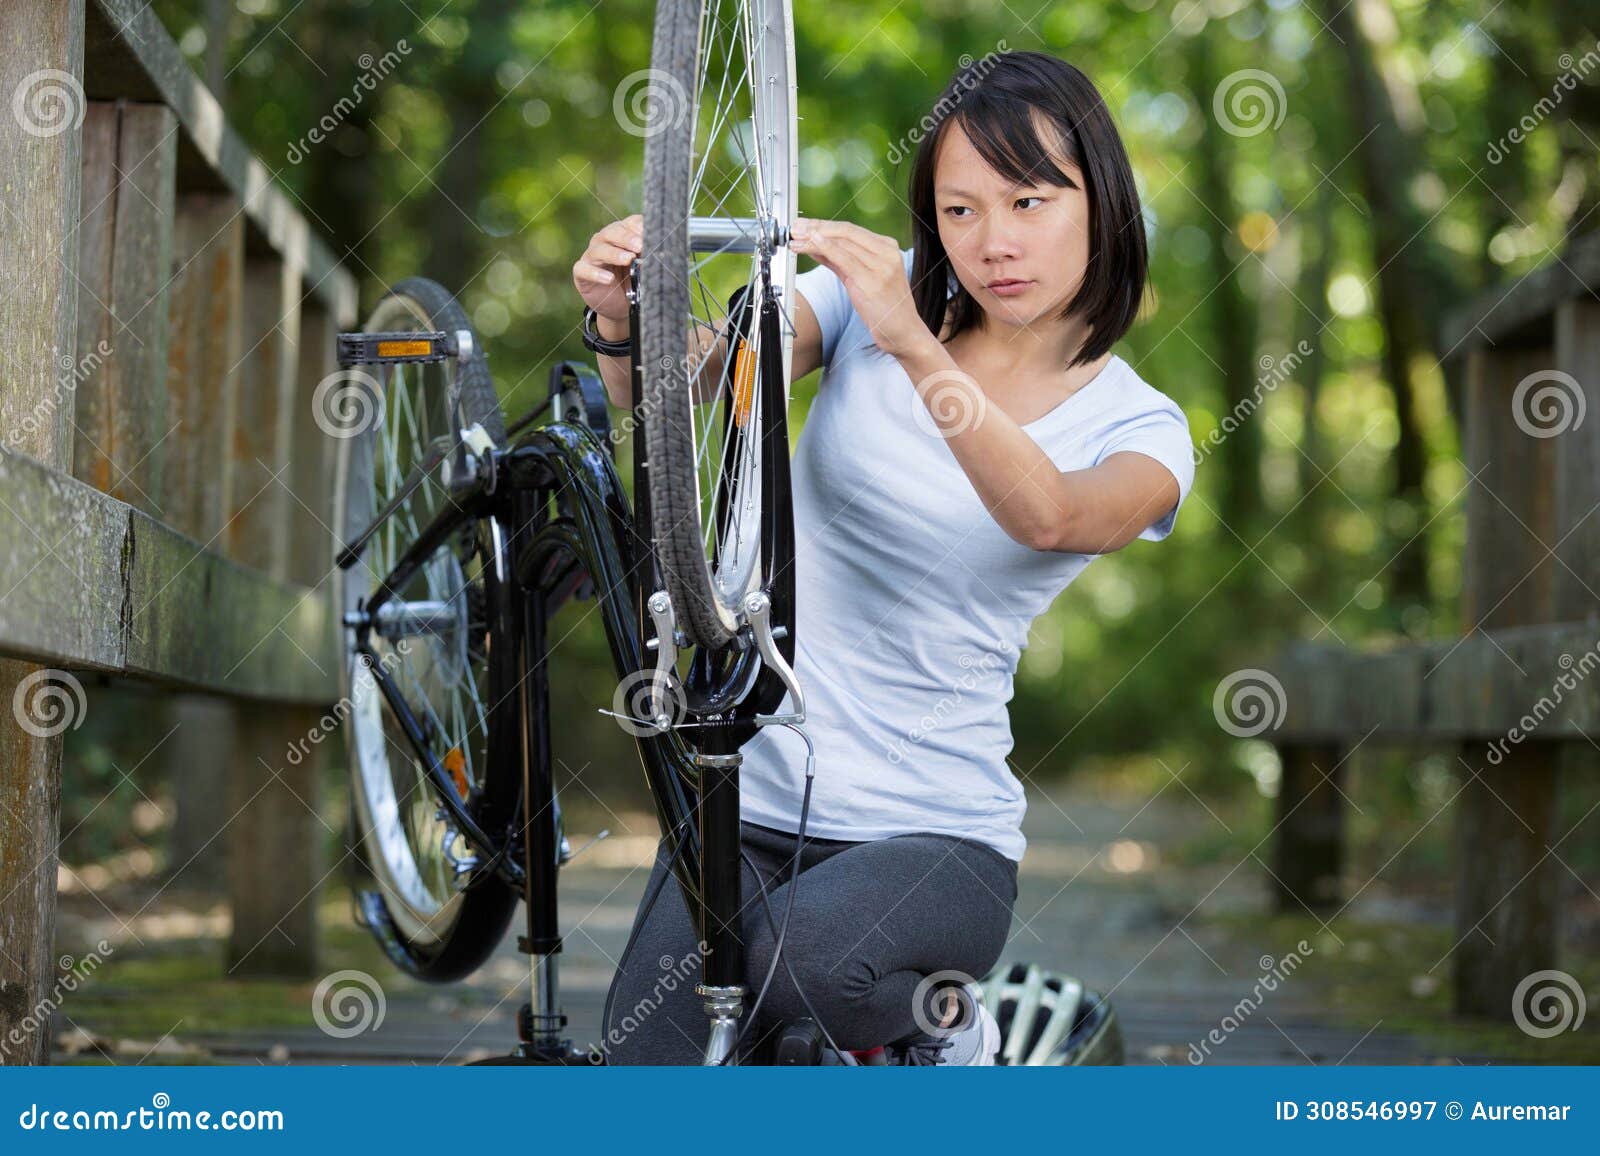 young woman fixing bike outdoors. young woman is fixing her bike outdoors